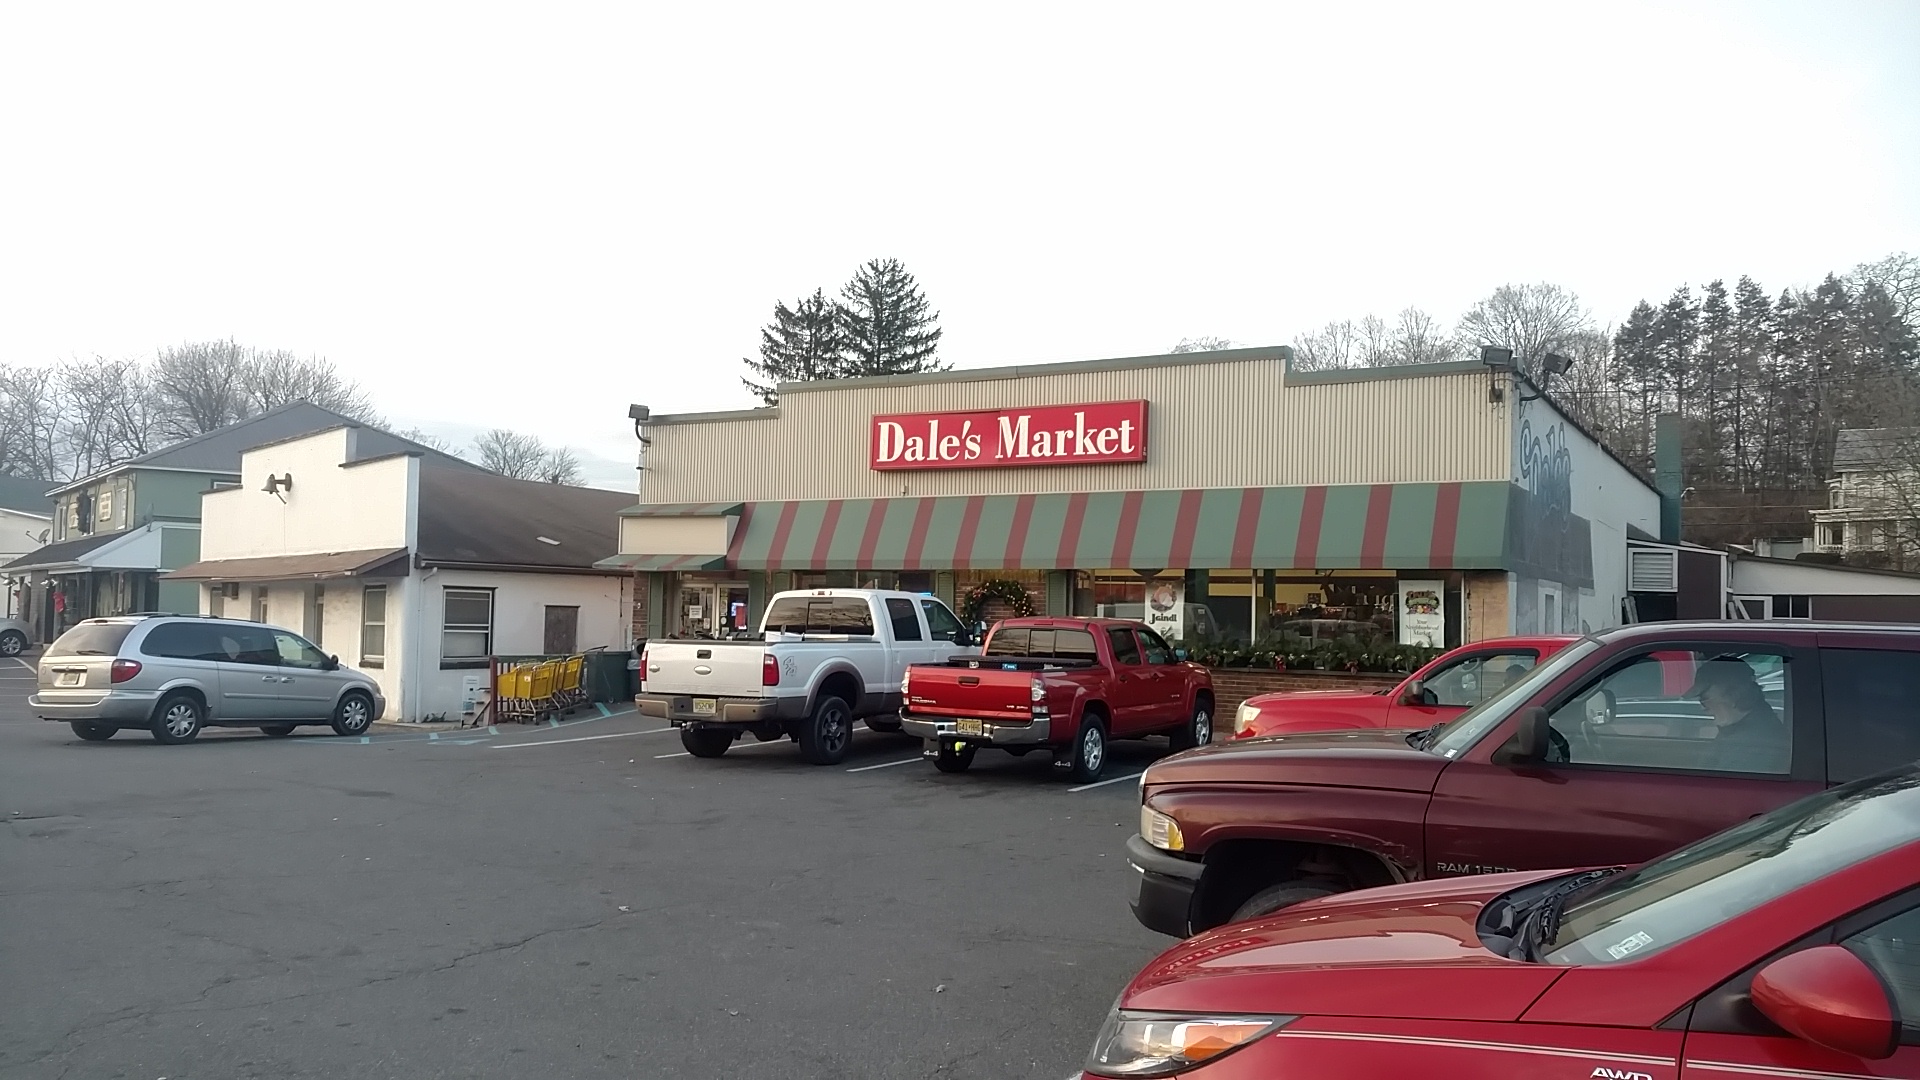 Dale's Market